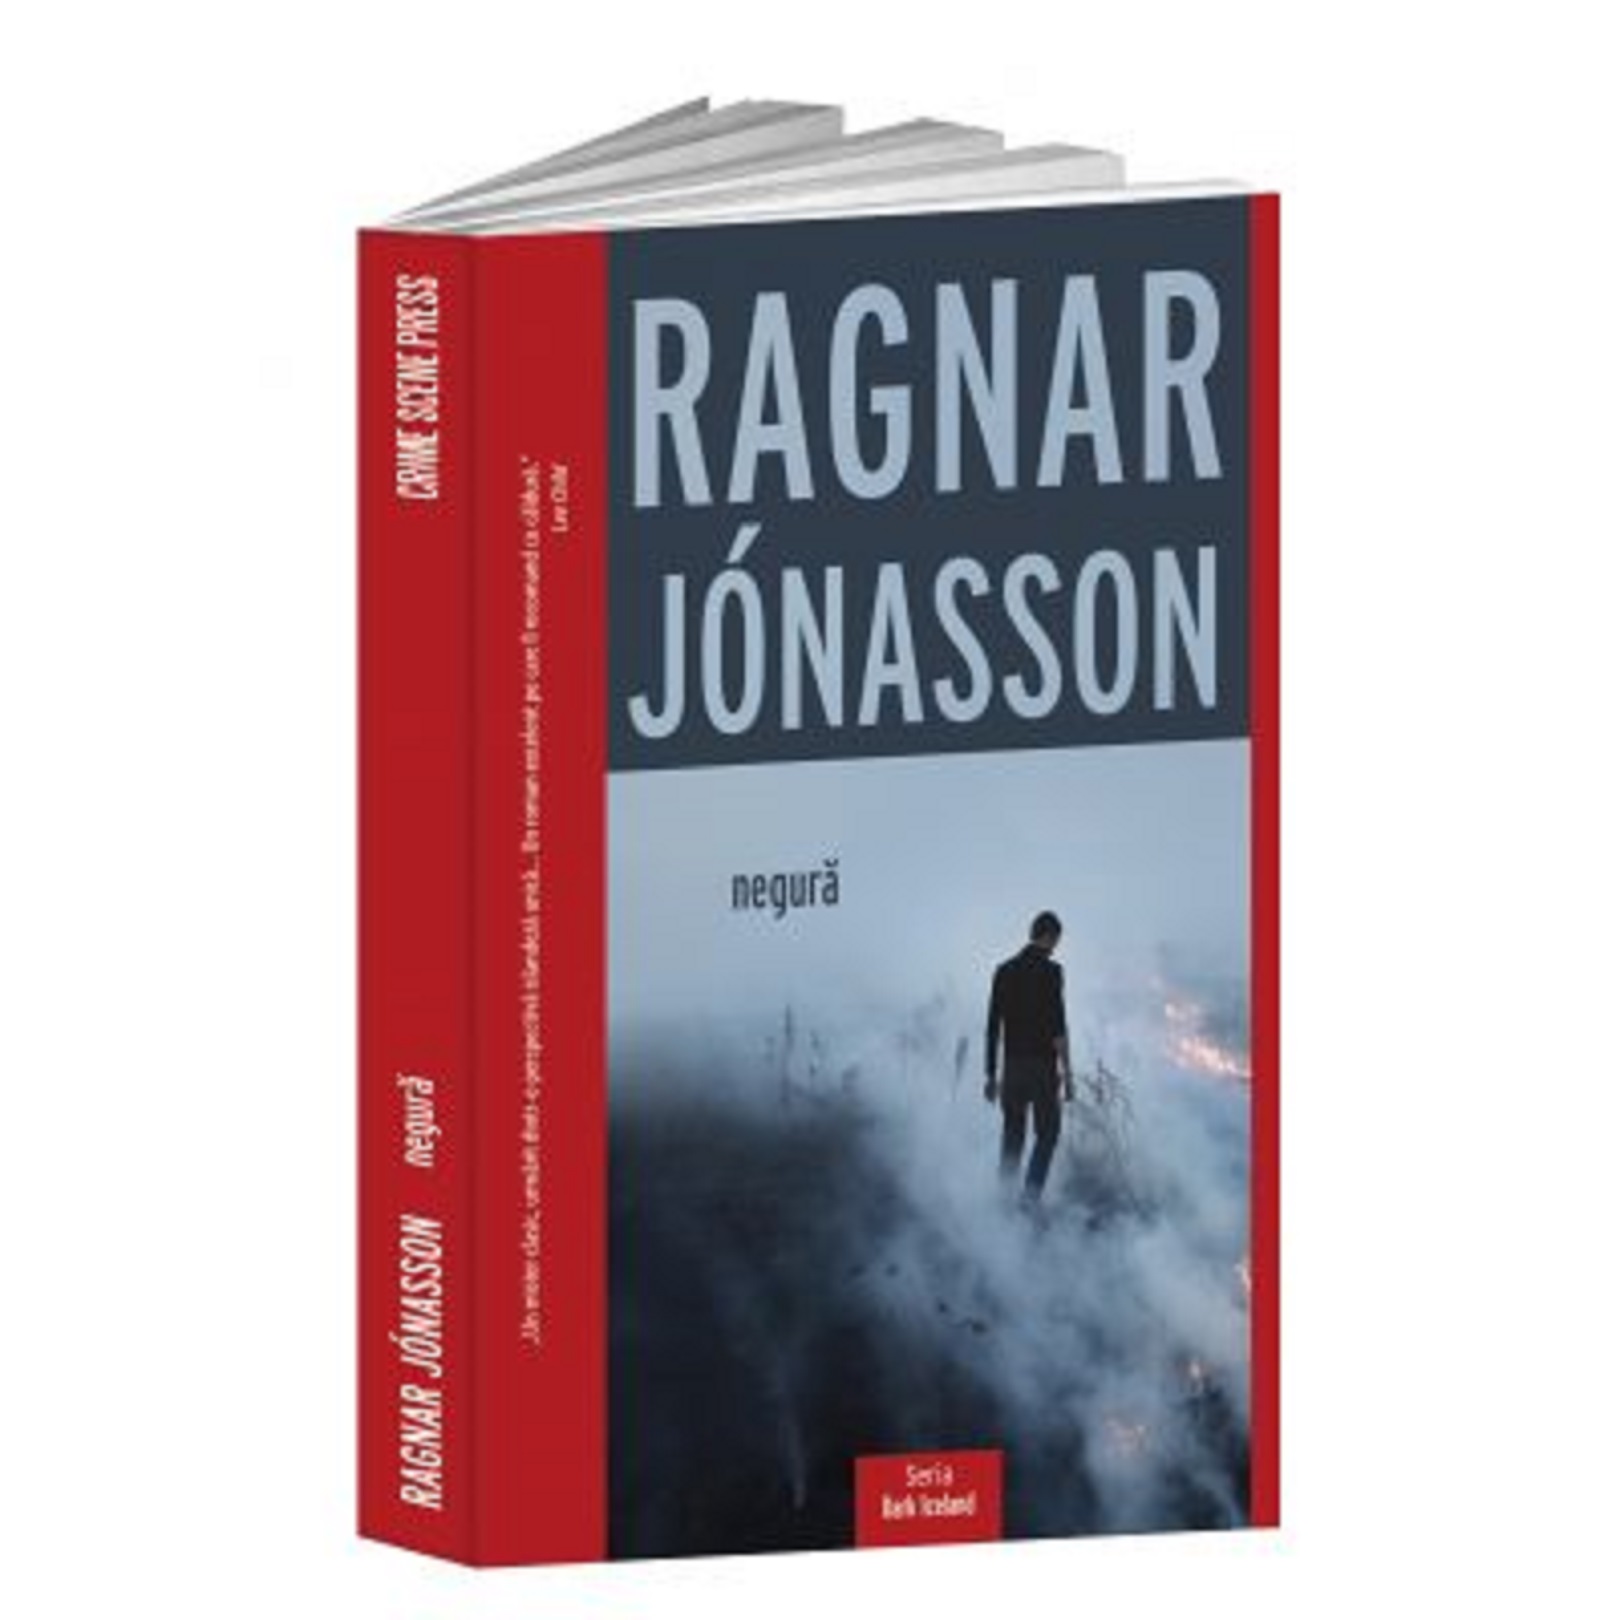 Negura | Ragnar Jonasson